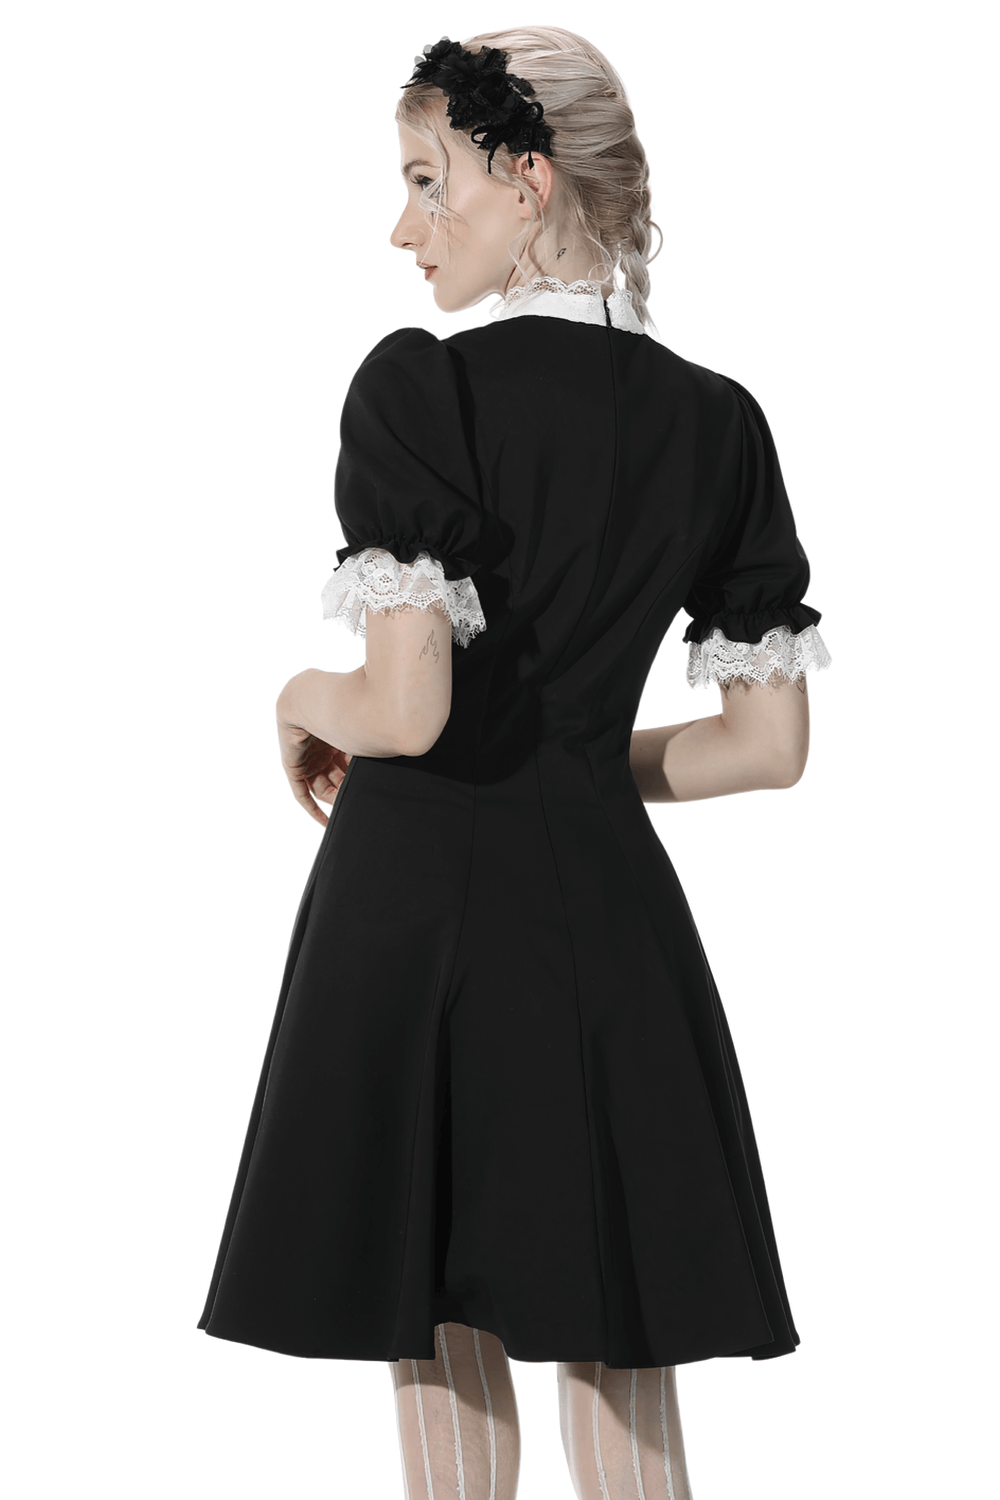 Gothic-Kreuzkleid mit Spitzenbesatz und schwarzem Lolita-Stil